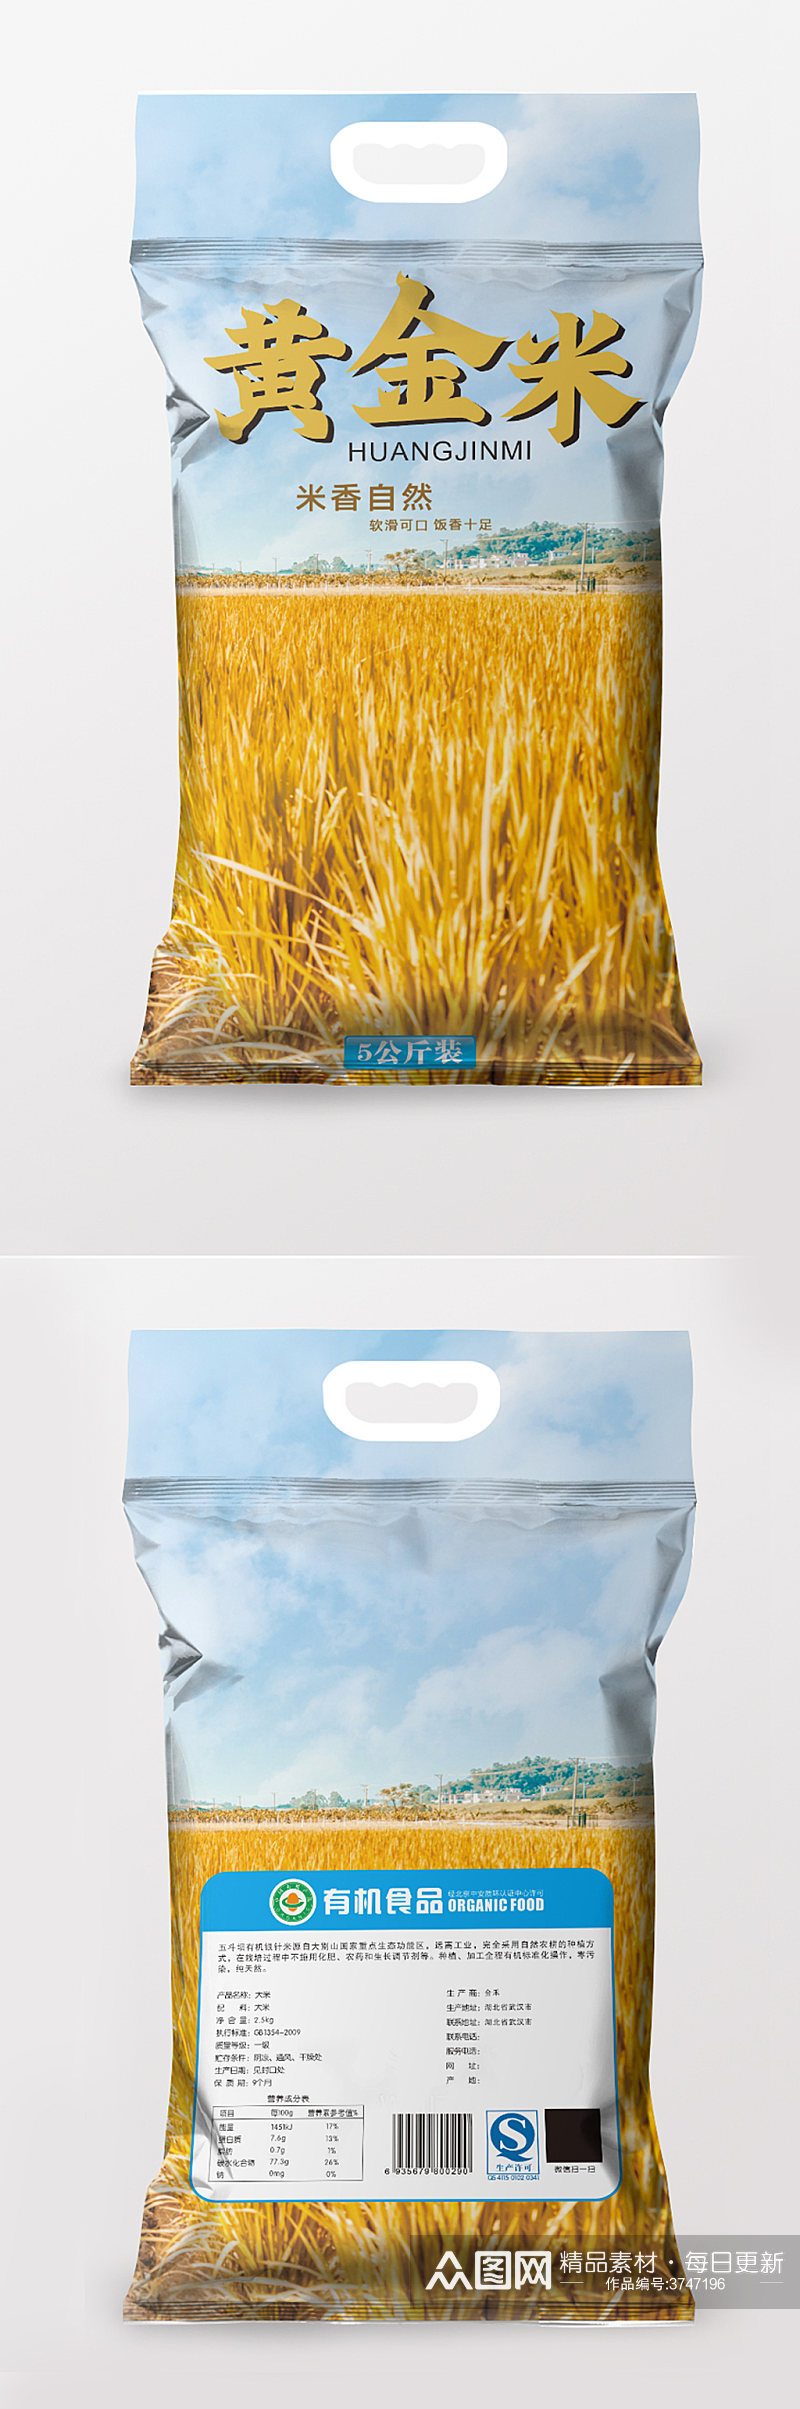 蓝色包装东北大米五常大米黄金米包装素材